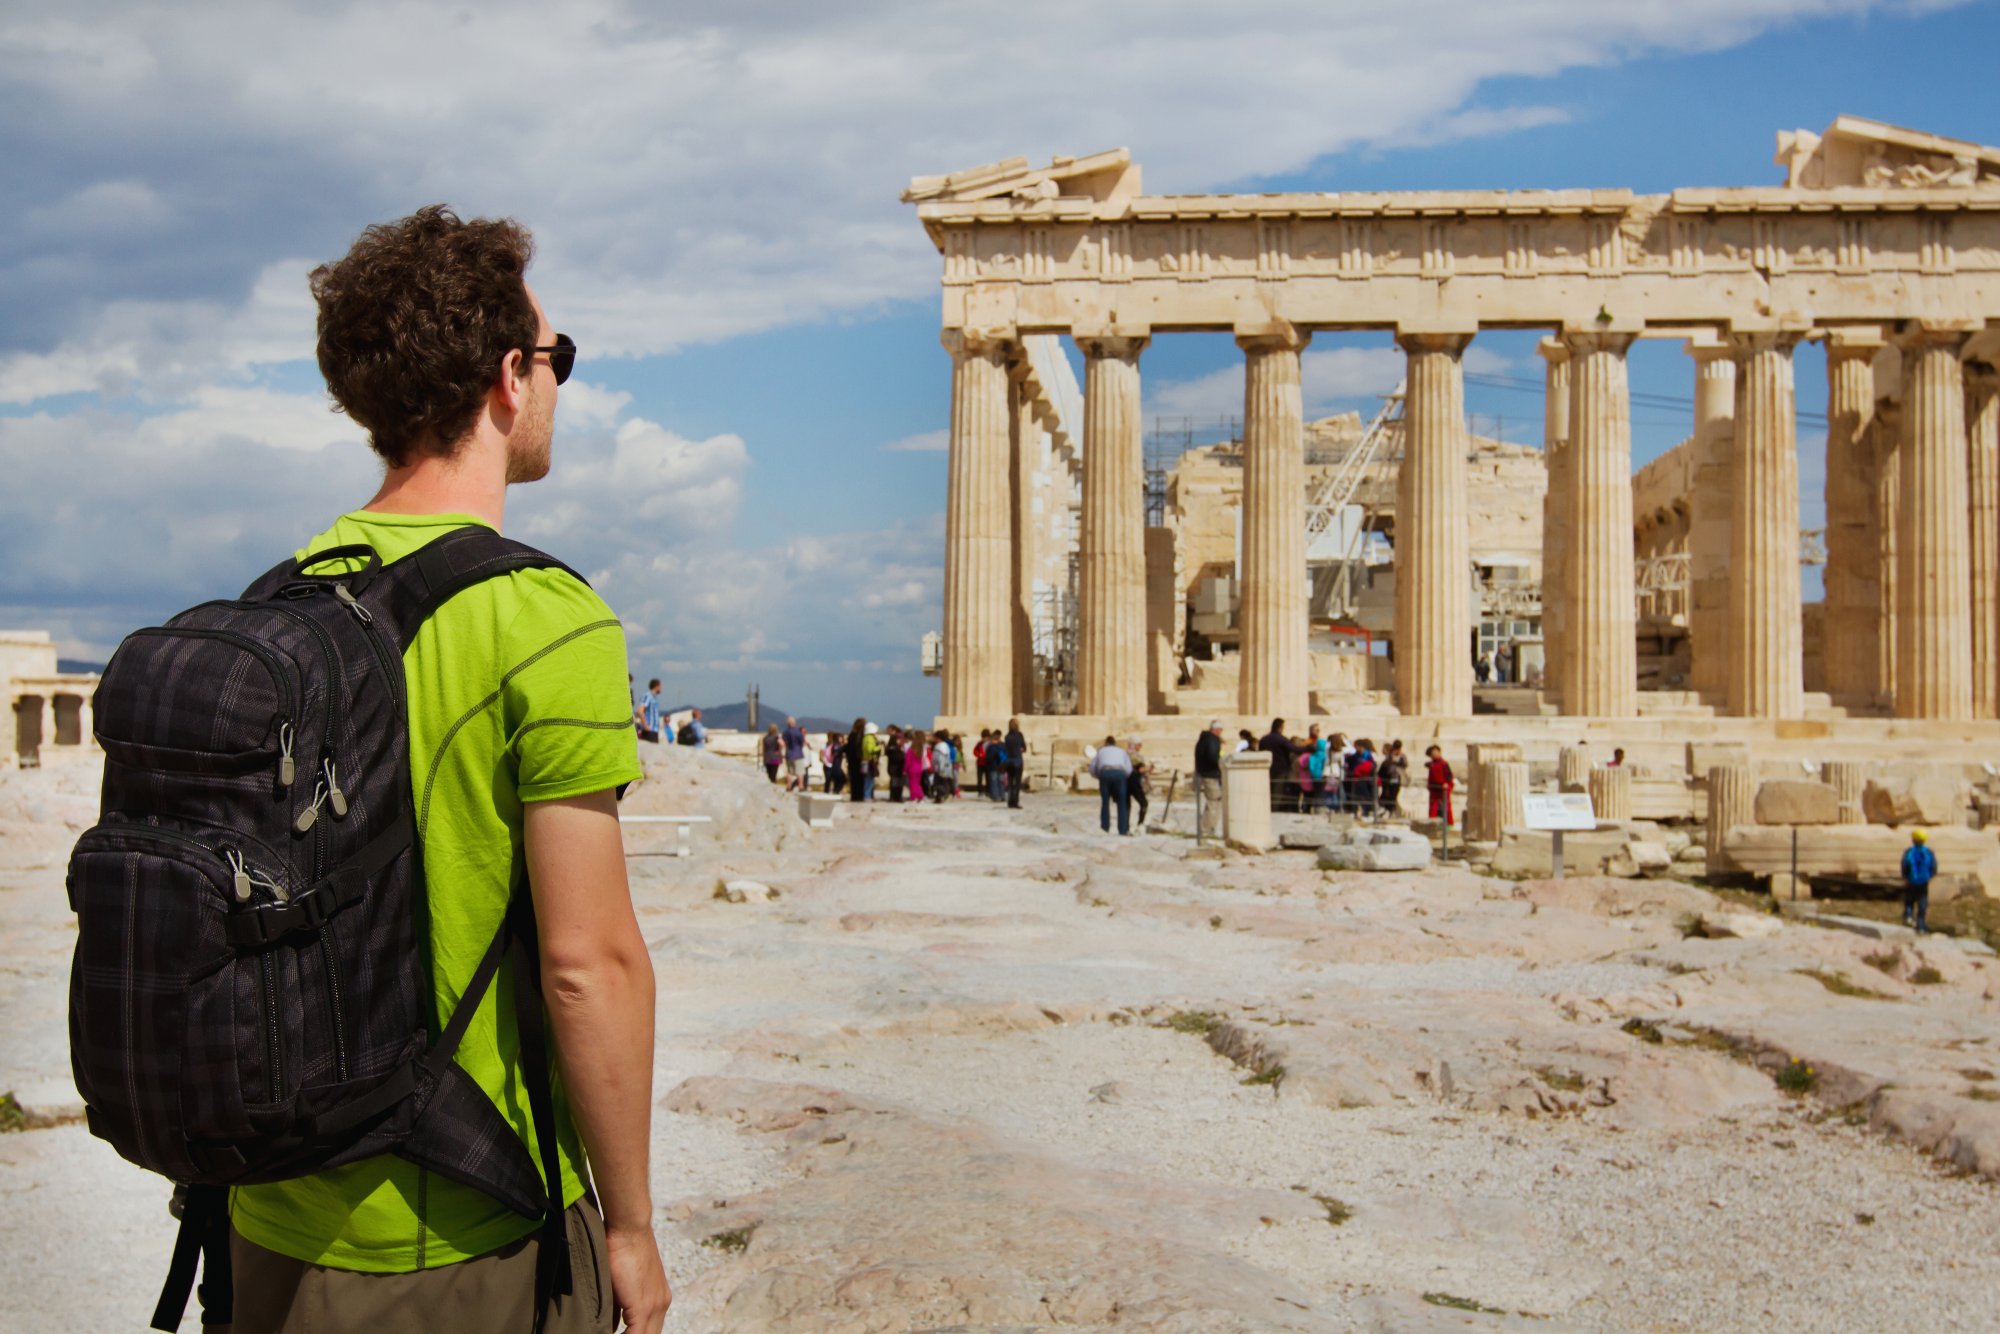 Στον «αέρα» 7.500 τουρίστες στην Ελλάδα μετά το «κανόνι» της FTI – Χρωστάει 1,8 εκατ. ευρώ από πέρσι